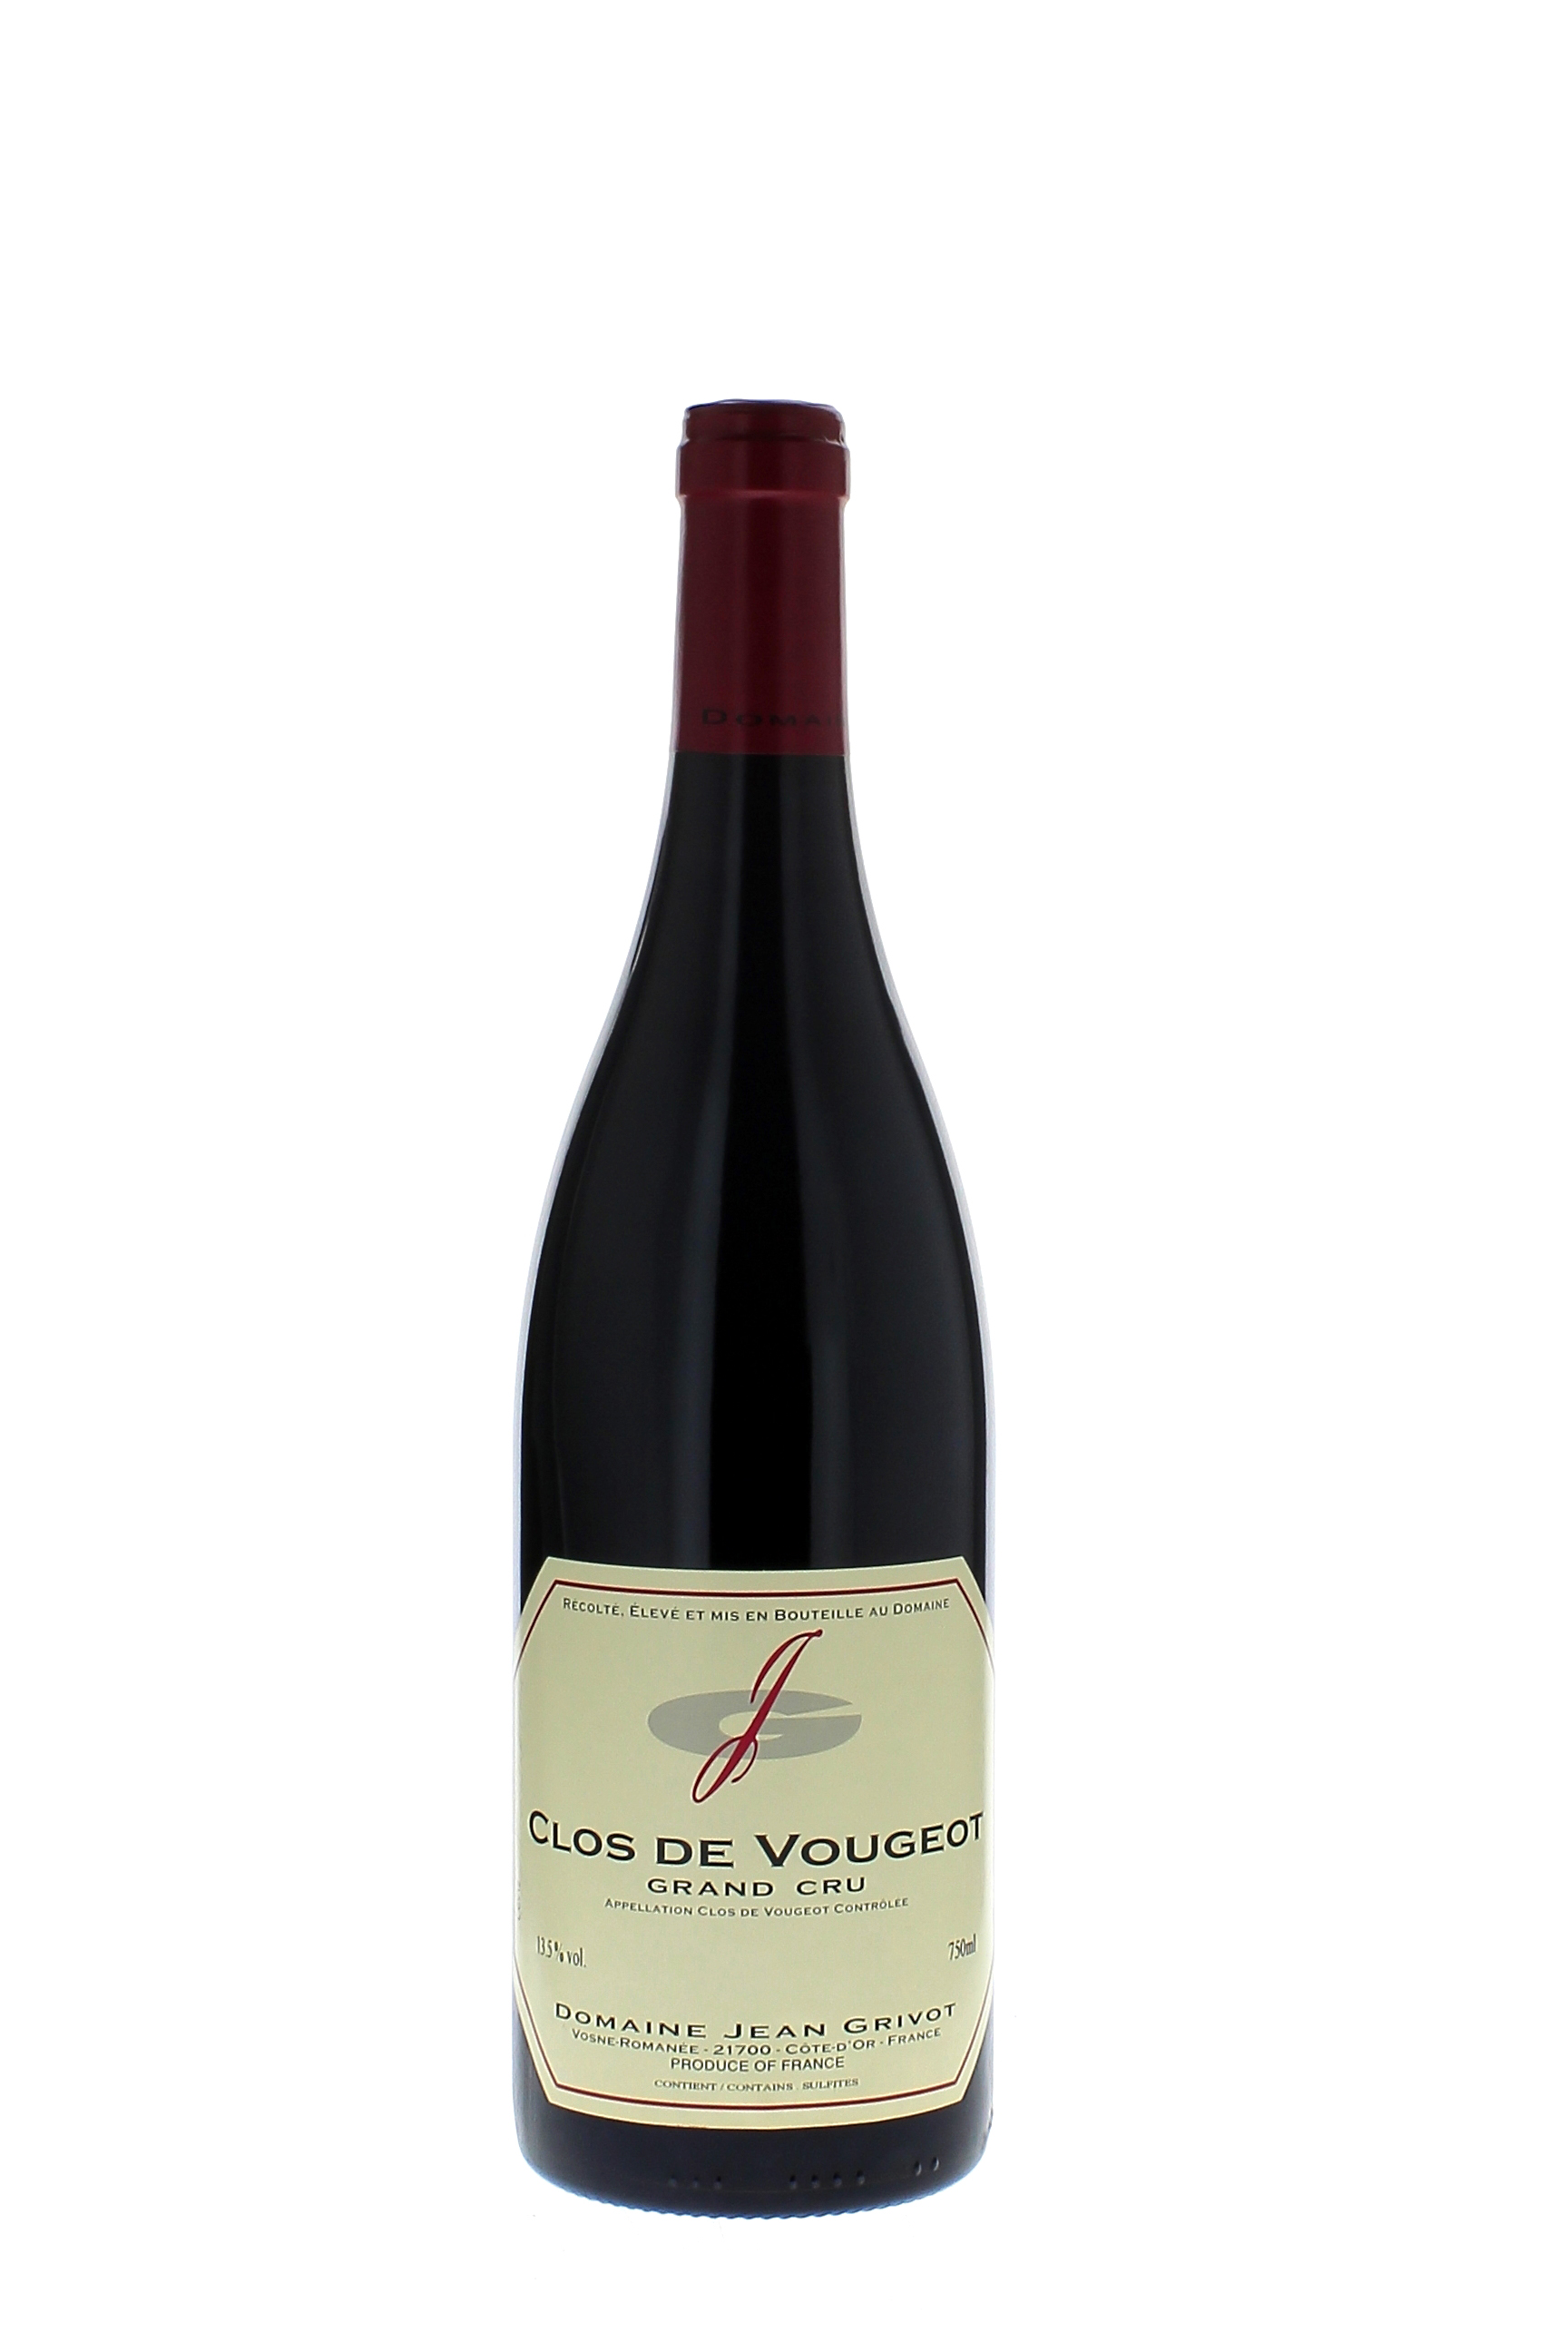 Clos vougeot grand cru 2012 Domaine GRIVOT, Bourgogne rouge